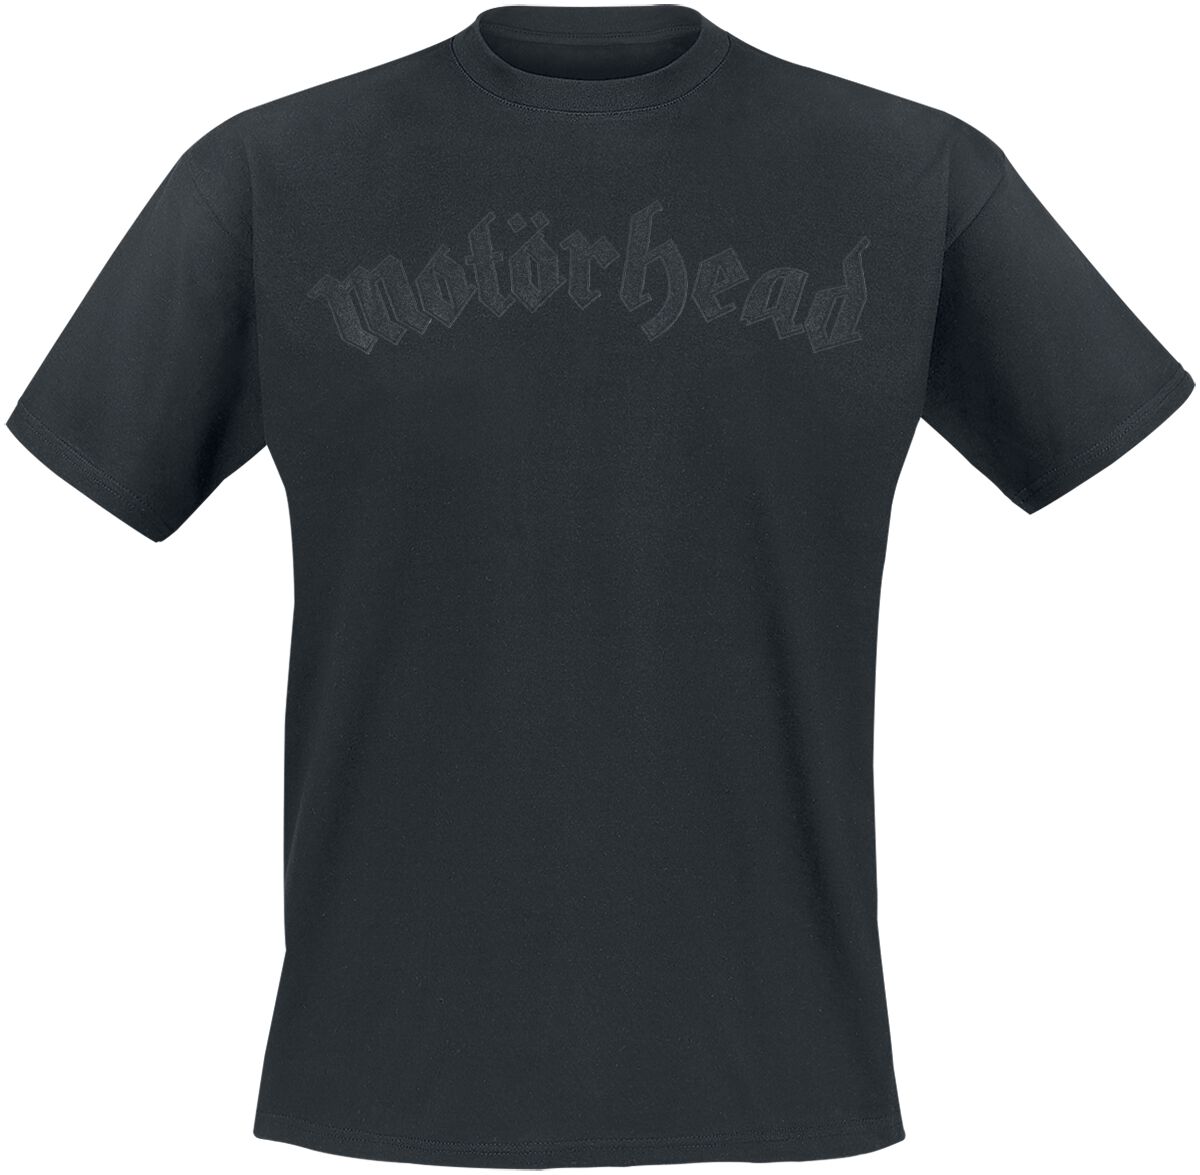 Motörhead T-Shirt - Black On Black Logo - S bis 4XL - für Männer - Größe 3XL - schwarz  - Lizenziertes Merchandise!